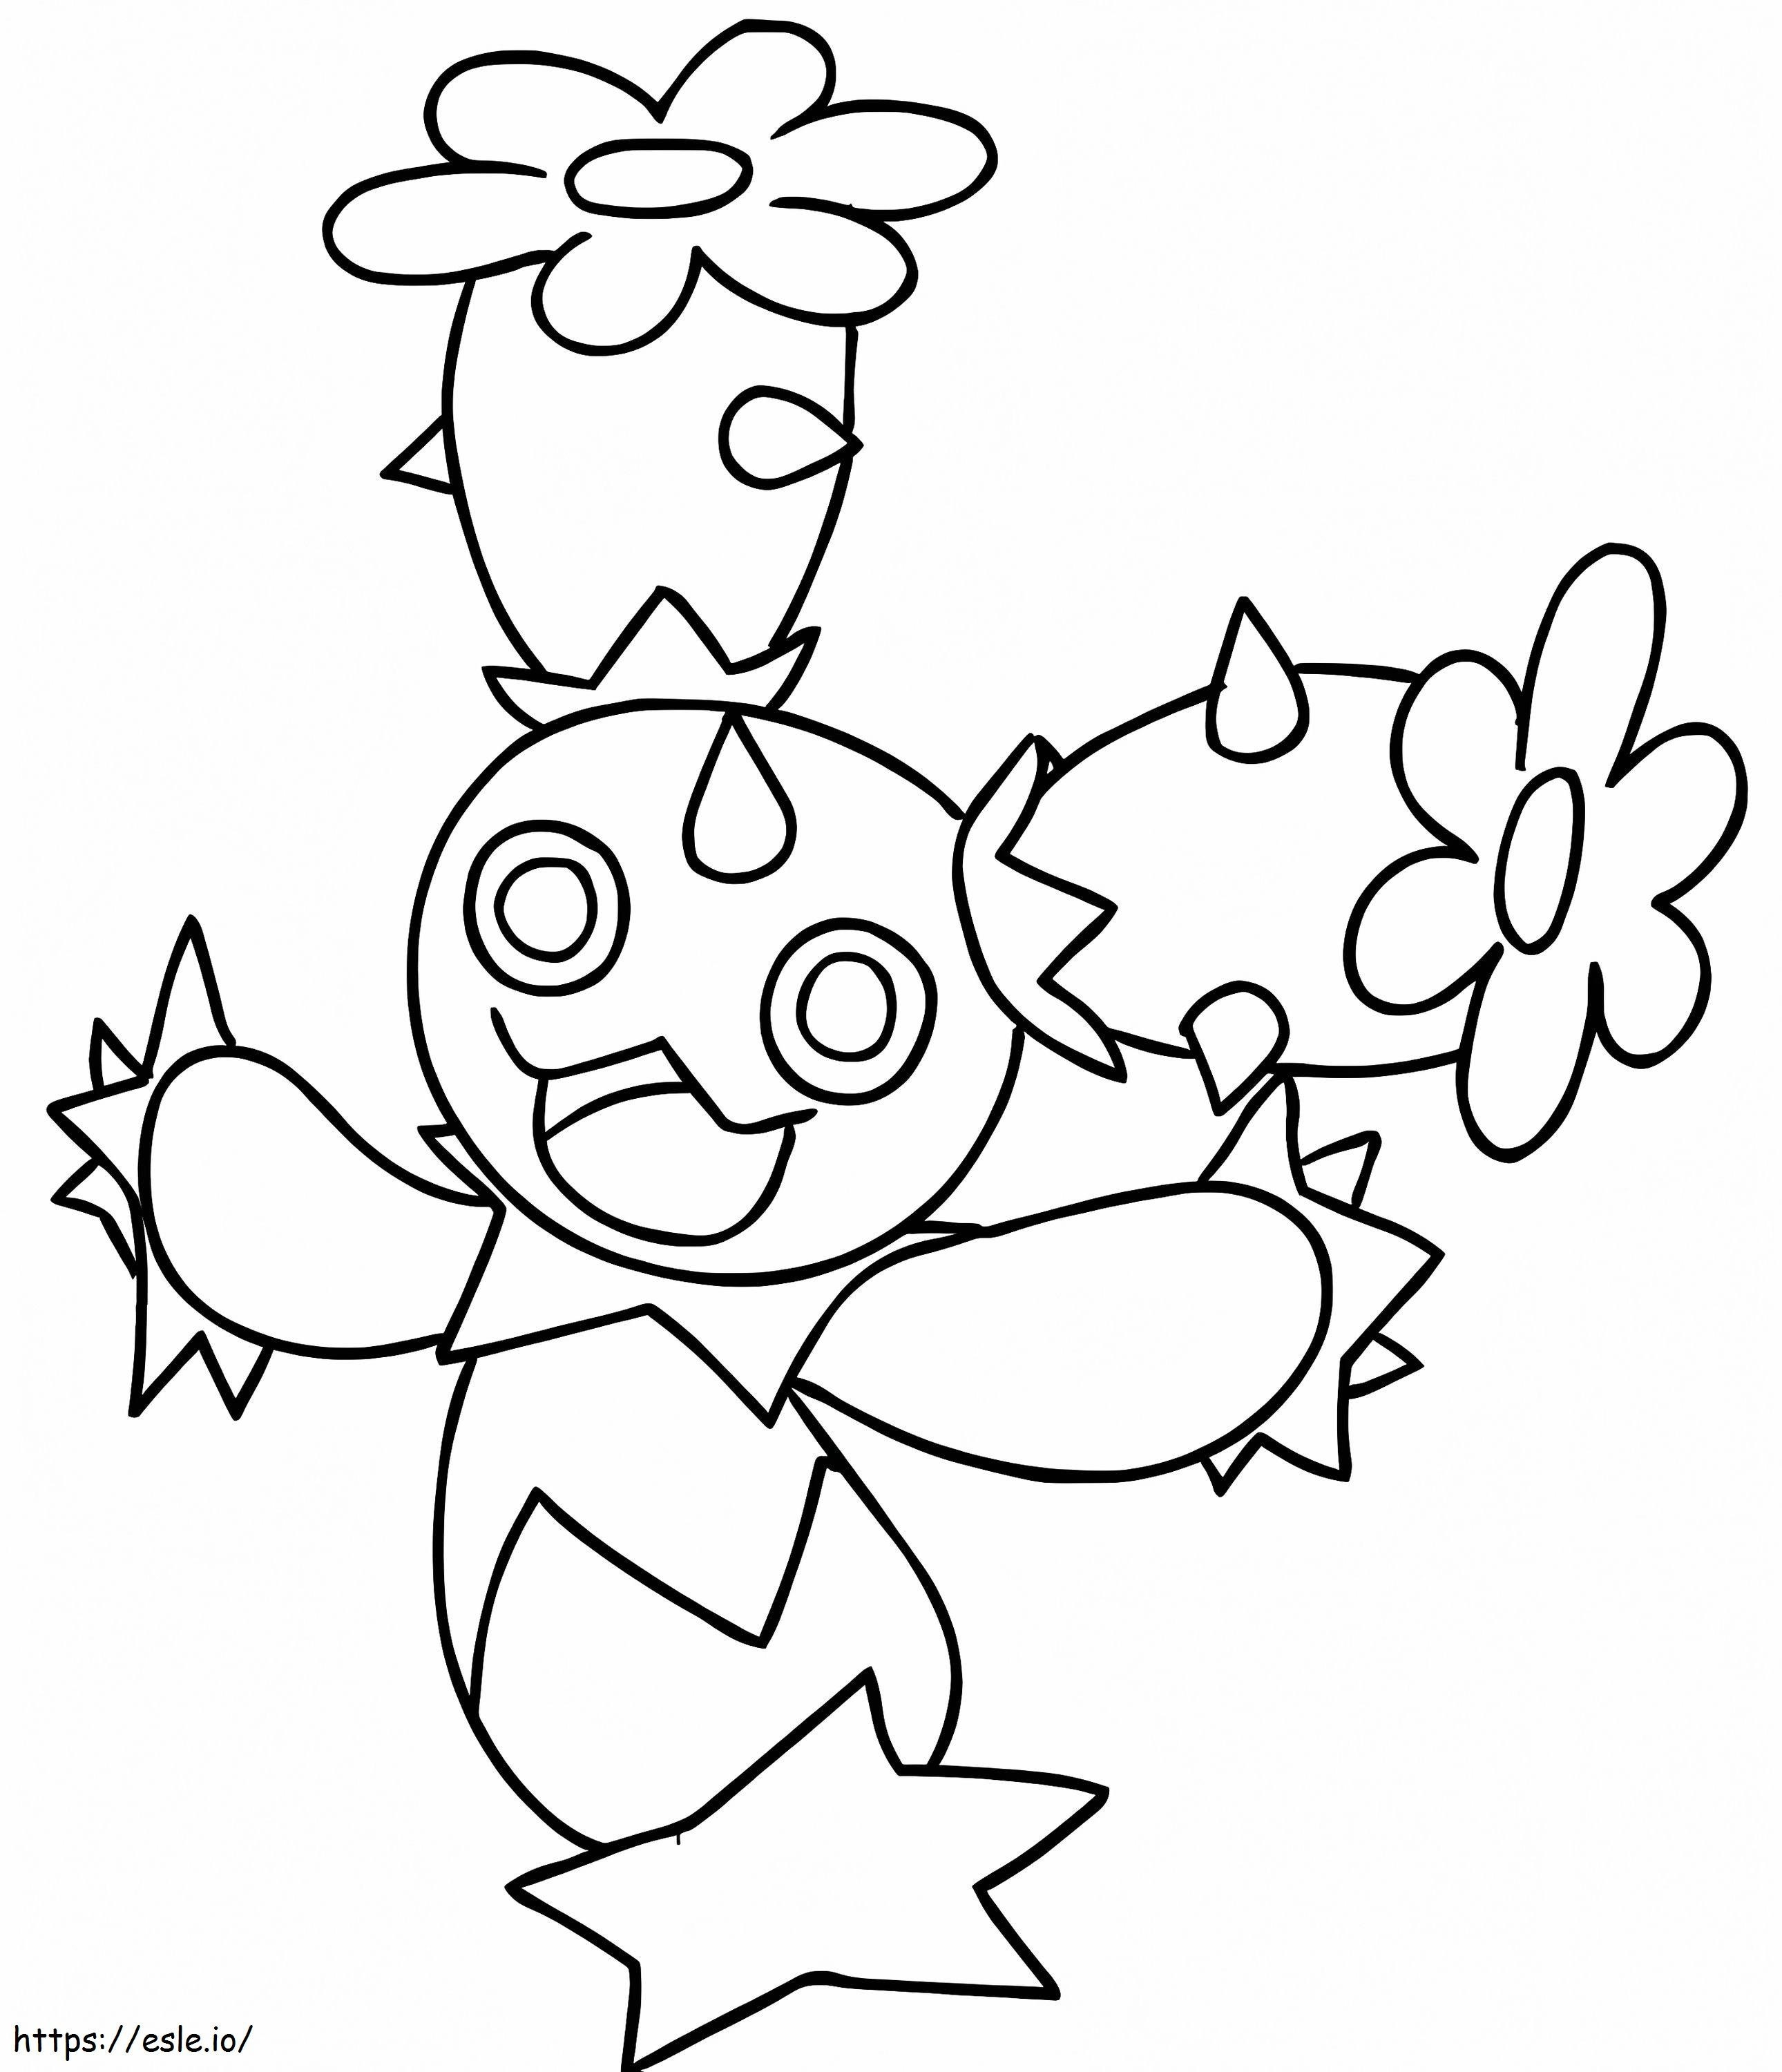 Maractus Pokémon 1 kleurplaat kleurplaat